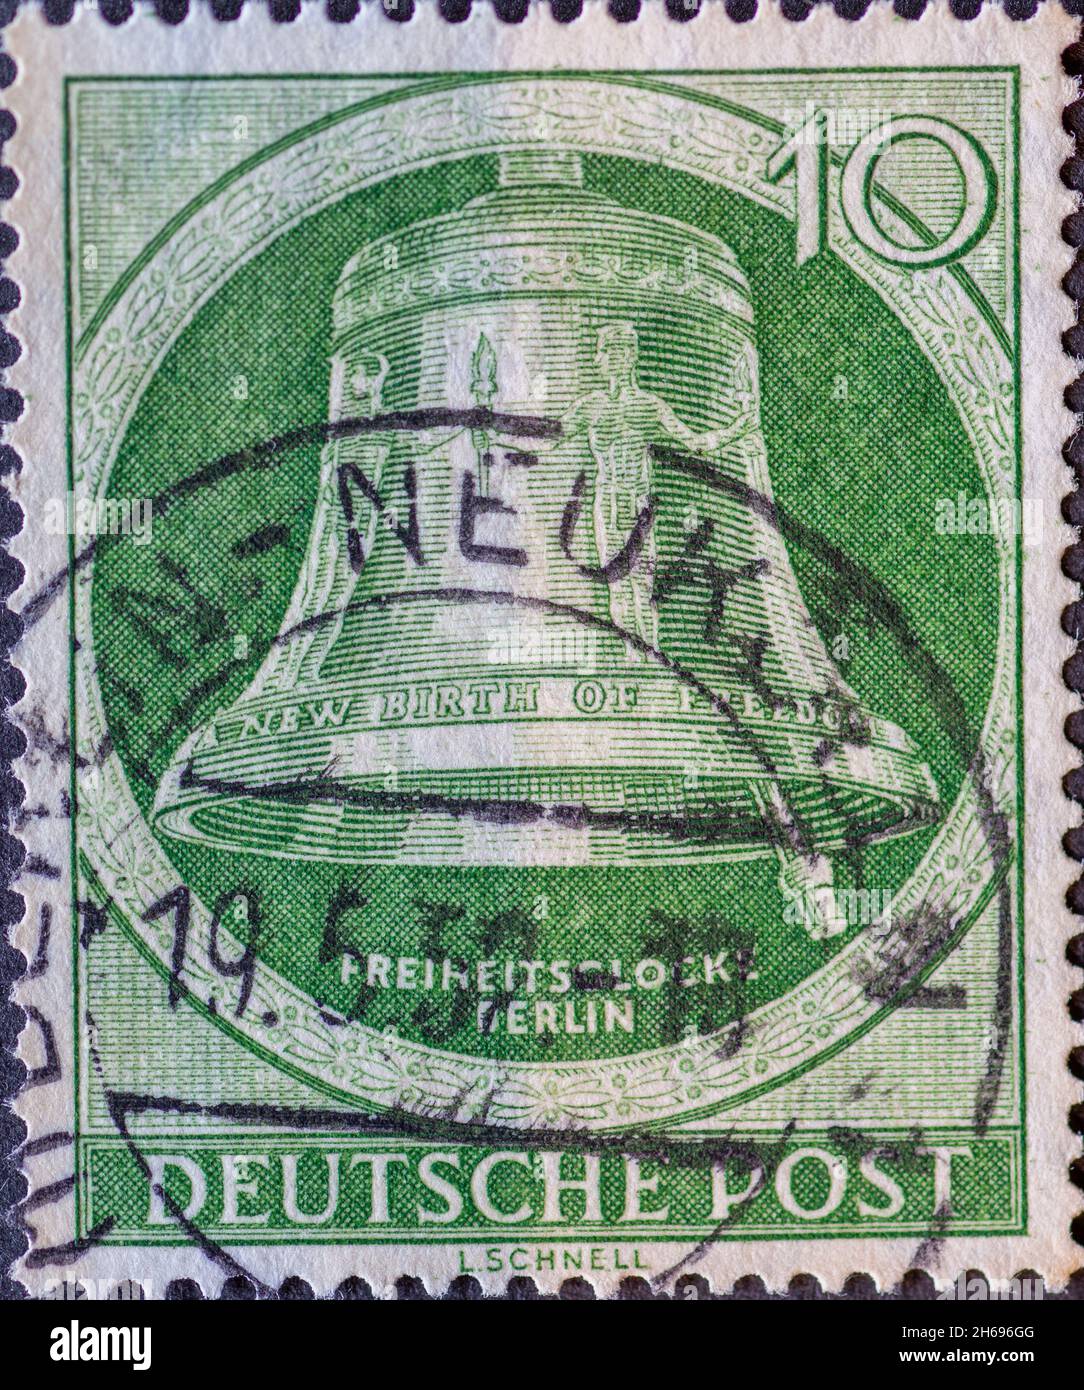 DEUTSCHLAND, Berlin - UM 1952: Eine Briefmarke aus Deutschland, Berlin zeigt die Freiheitsglocke mit dem Text: New Birth of Freedom. Klapper rechts. Farbe: Stockfoto